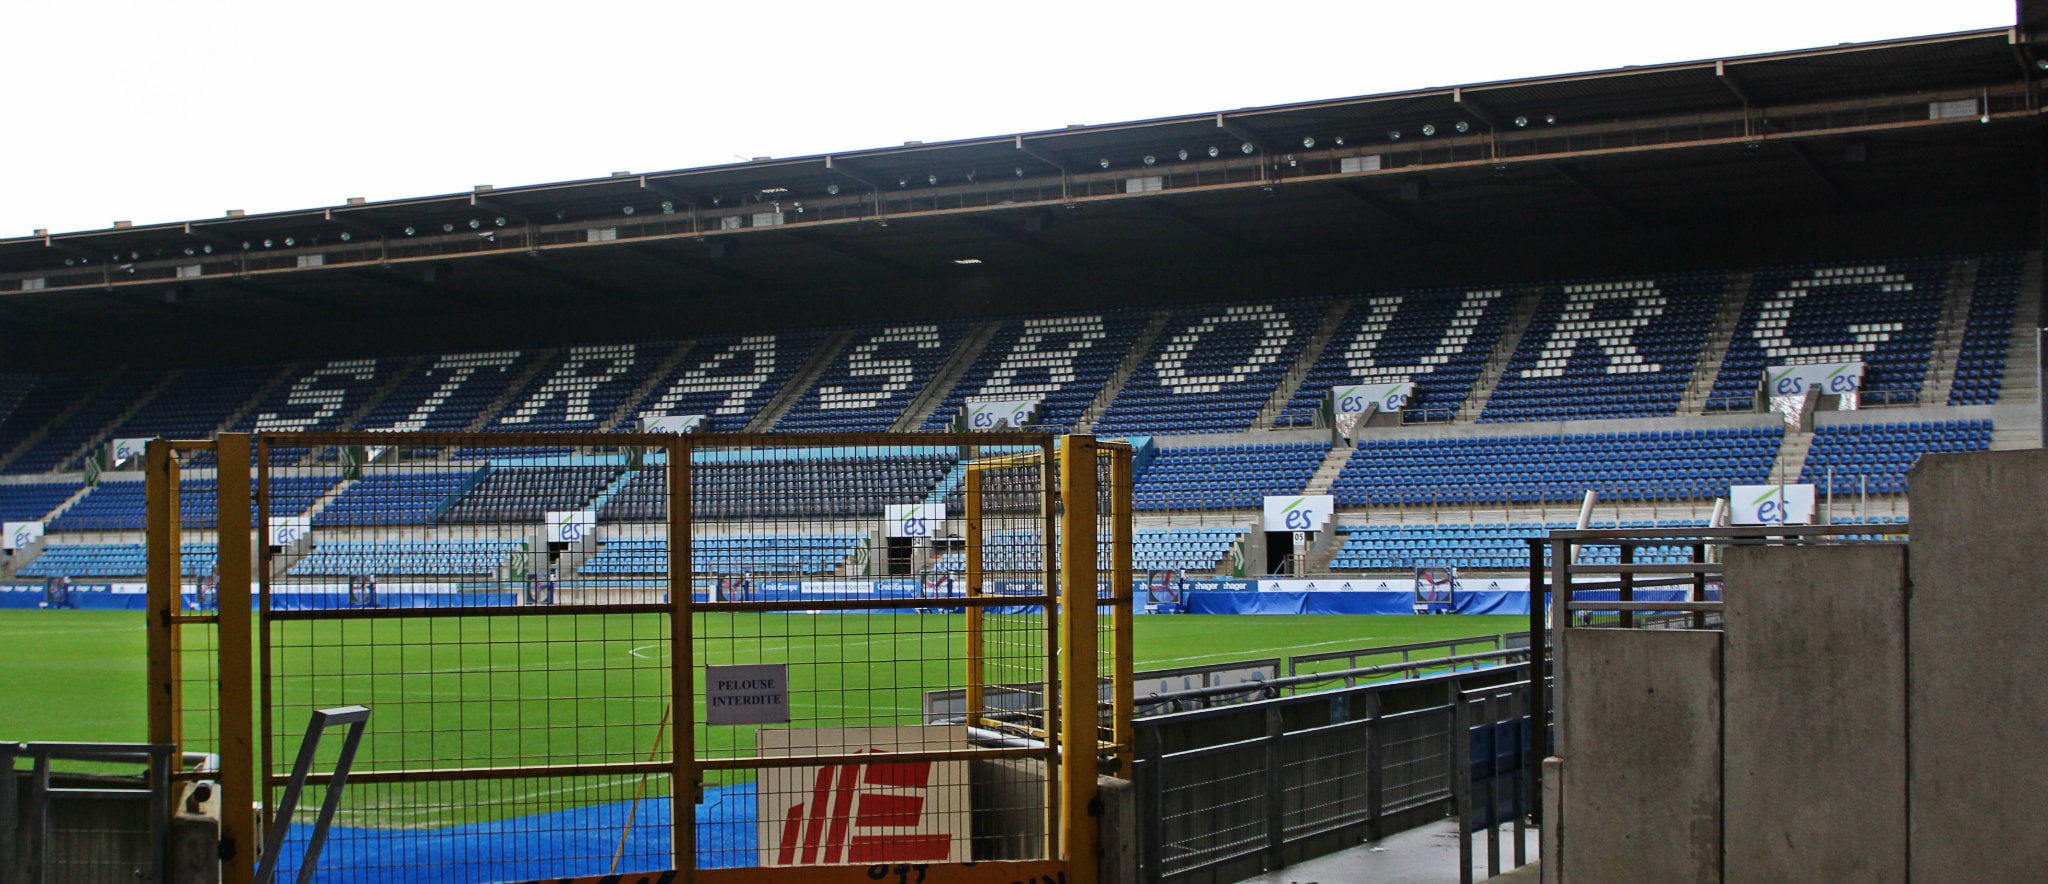 Les tribunes populaires au debout au bord du stade vont-elles résister à la rénovation de la Meinau ? (photo JFG / Rue89 Strasbourg)